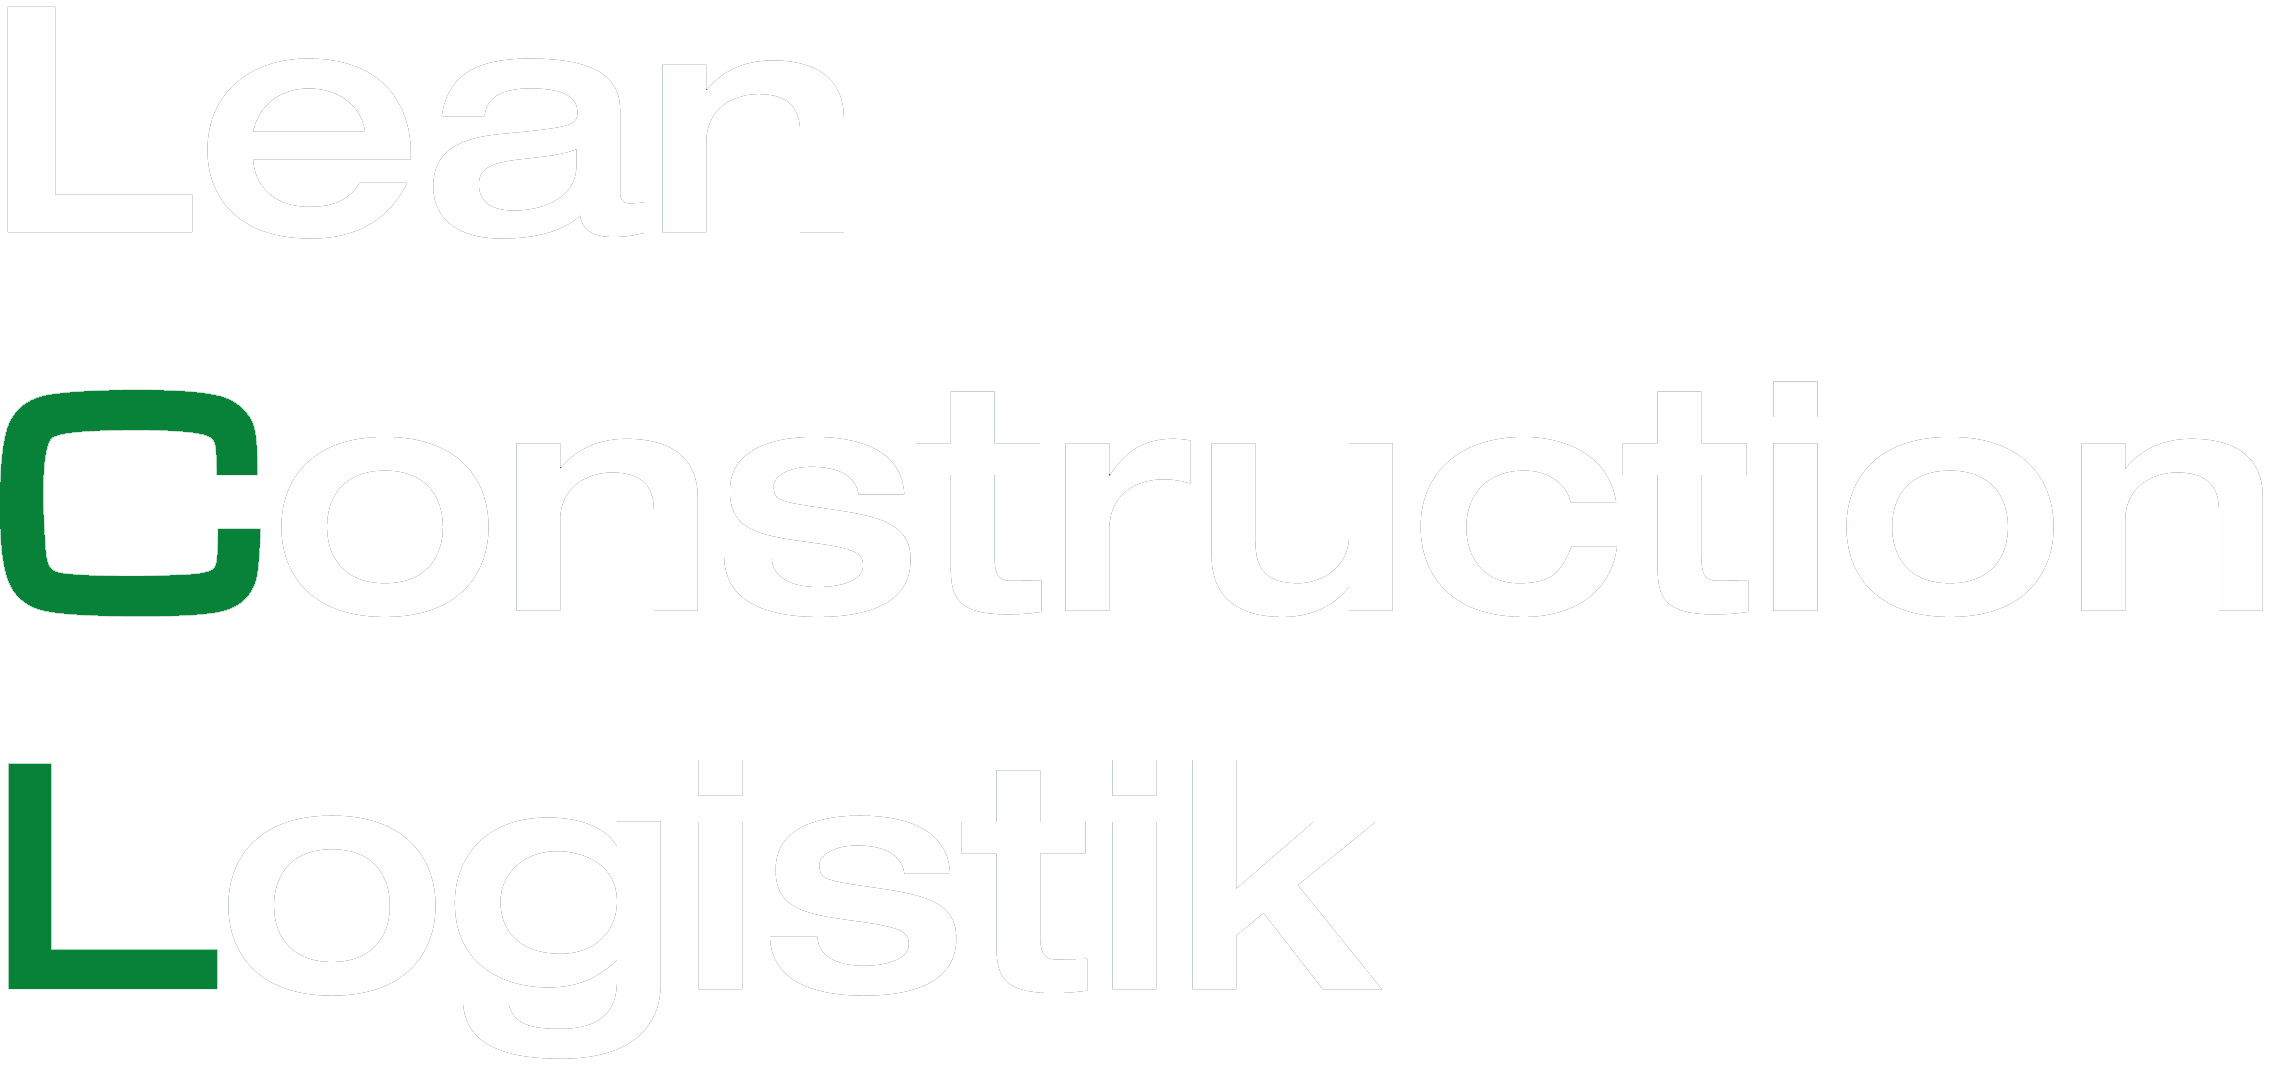 Lean Construction Logistik